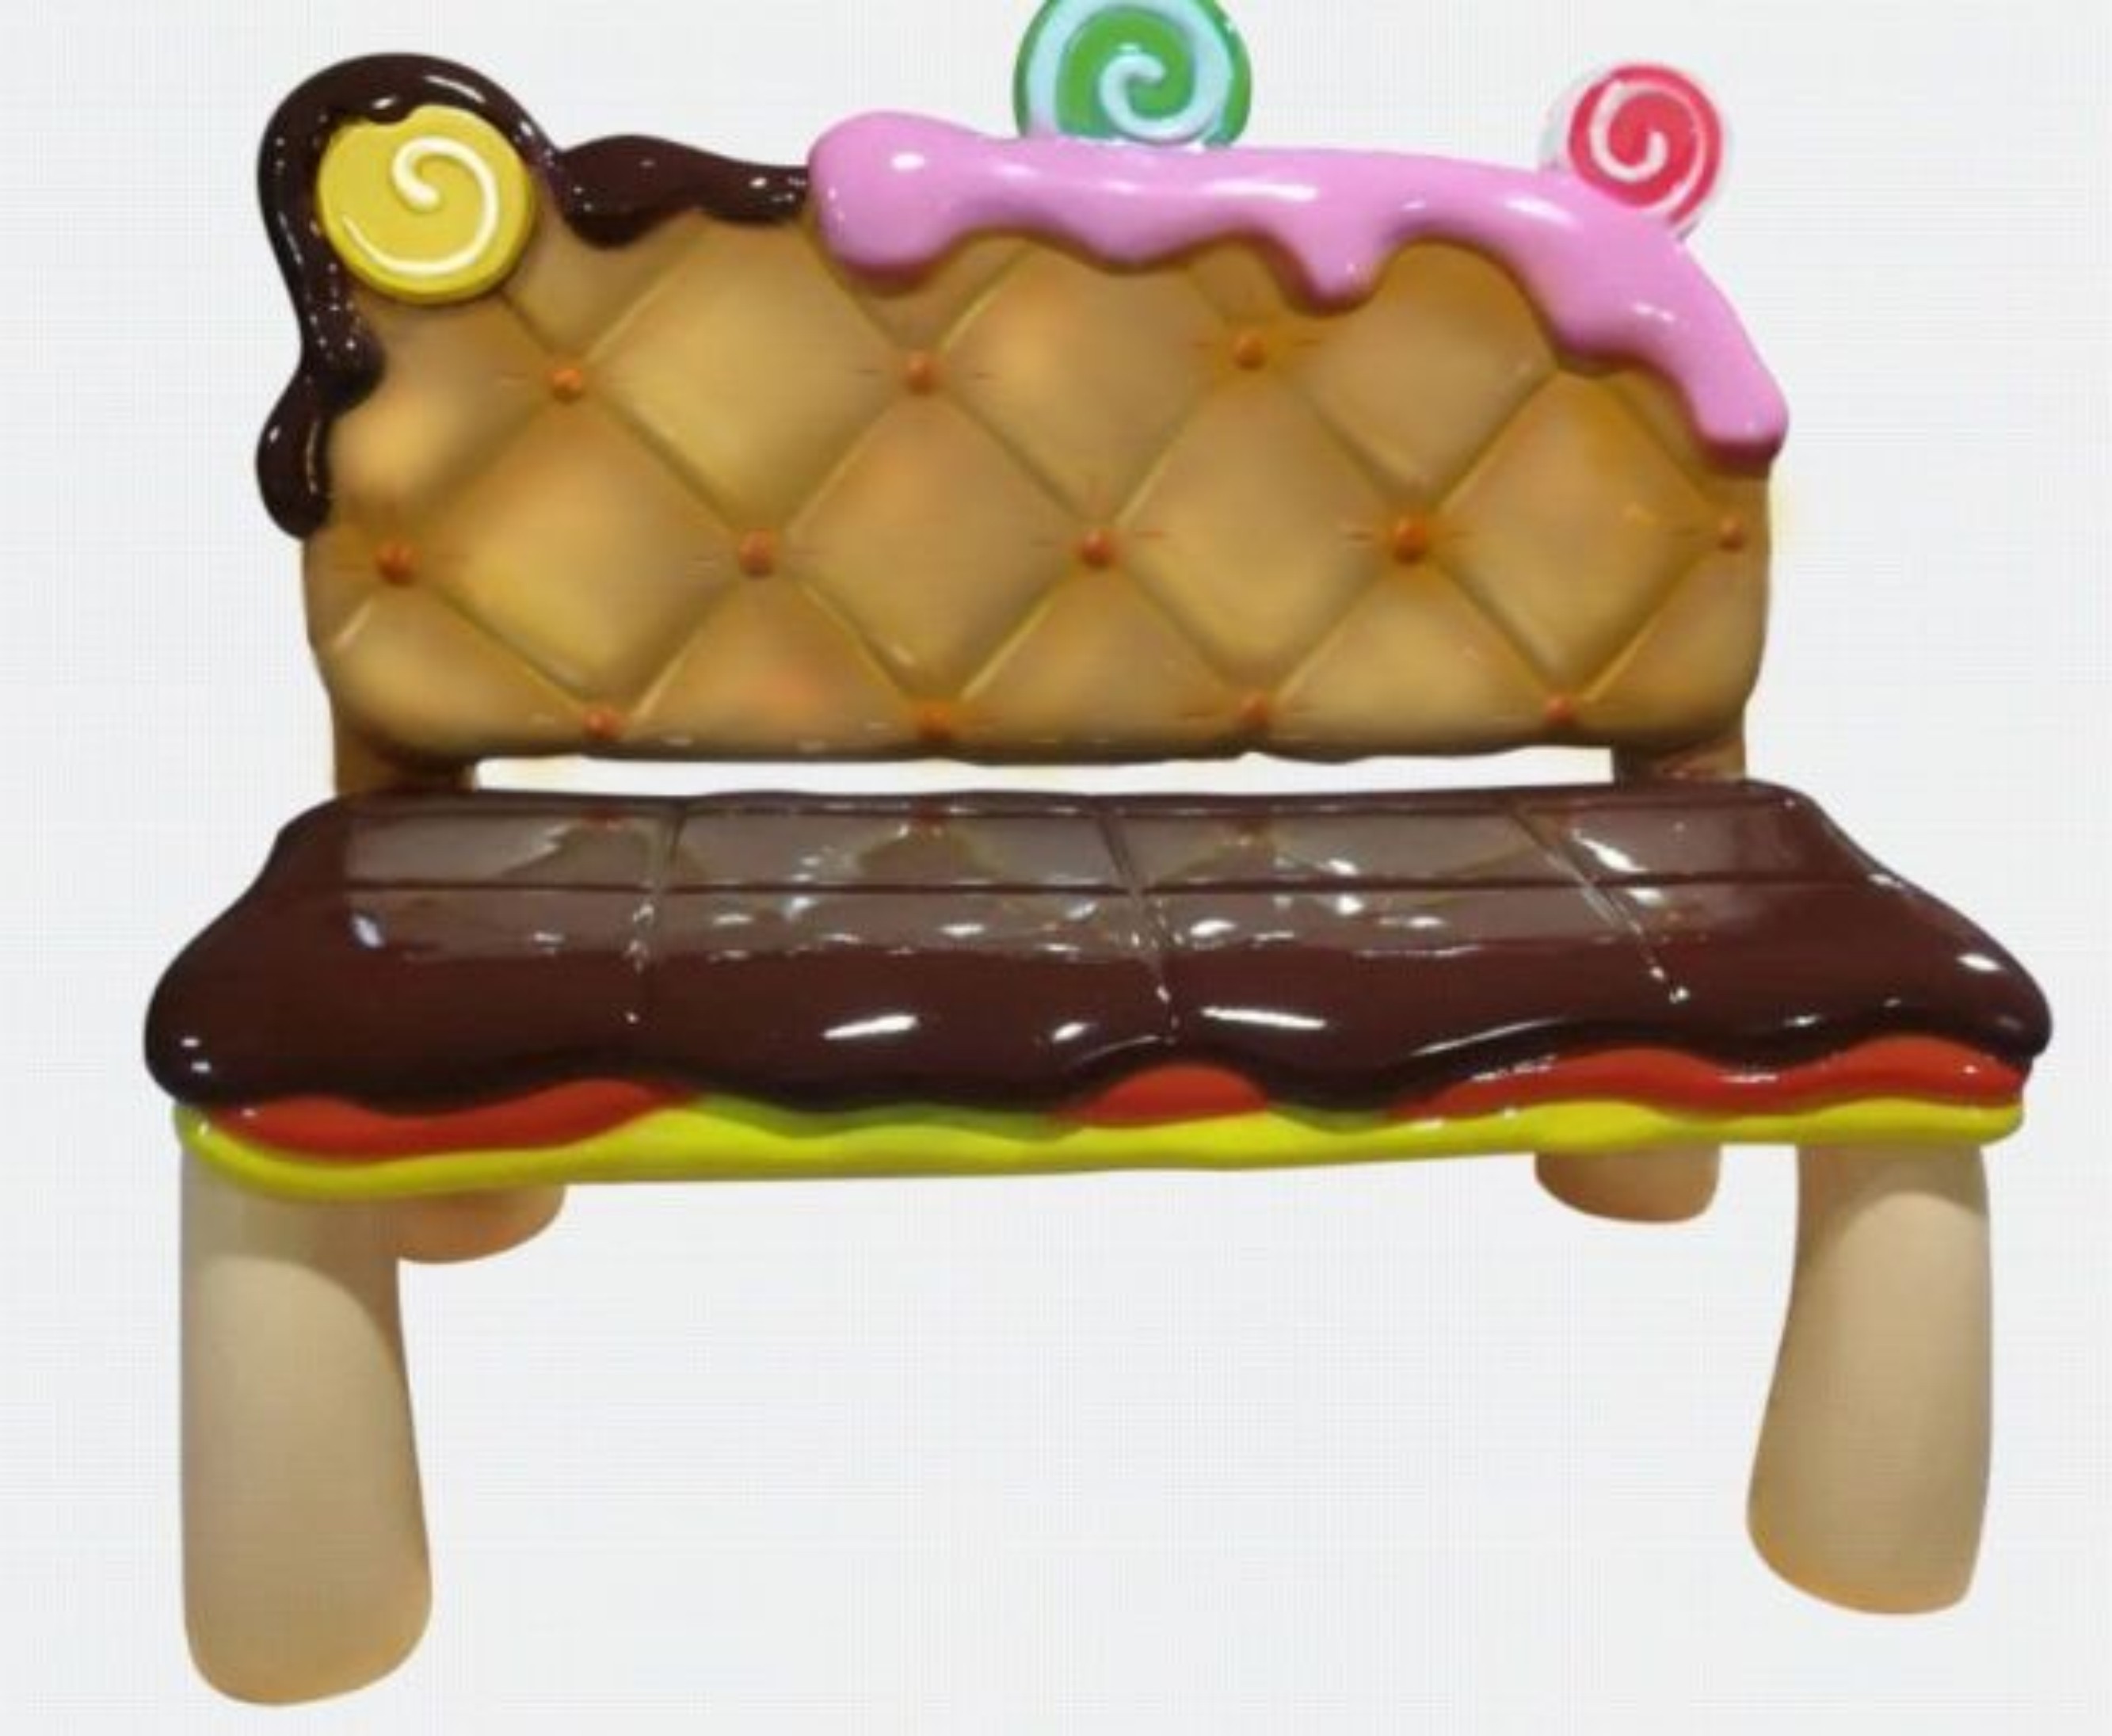 中山飞熊主题创意 巧克力饼干凳子